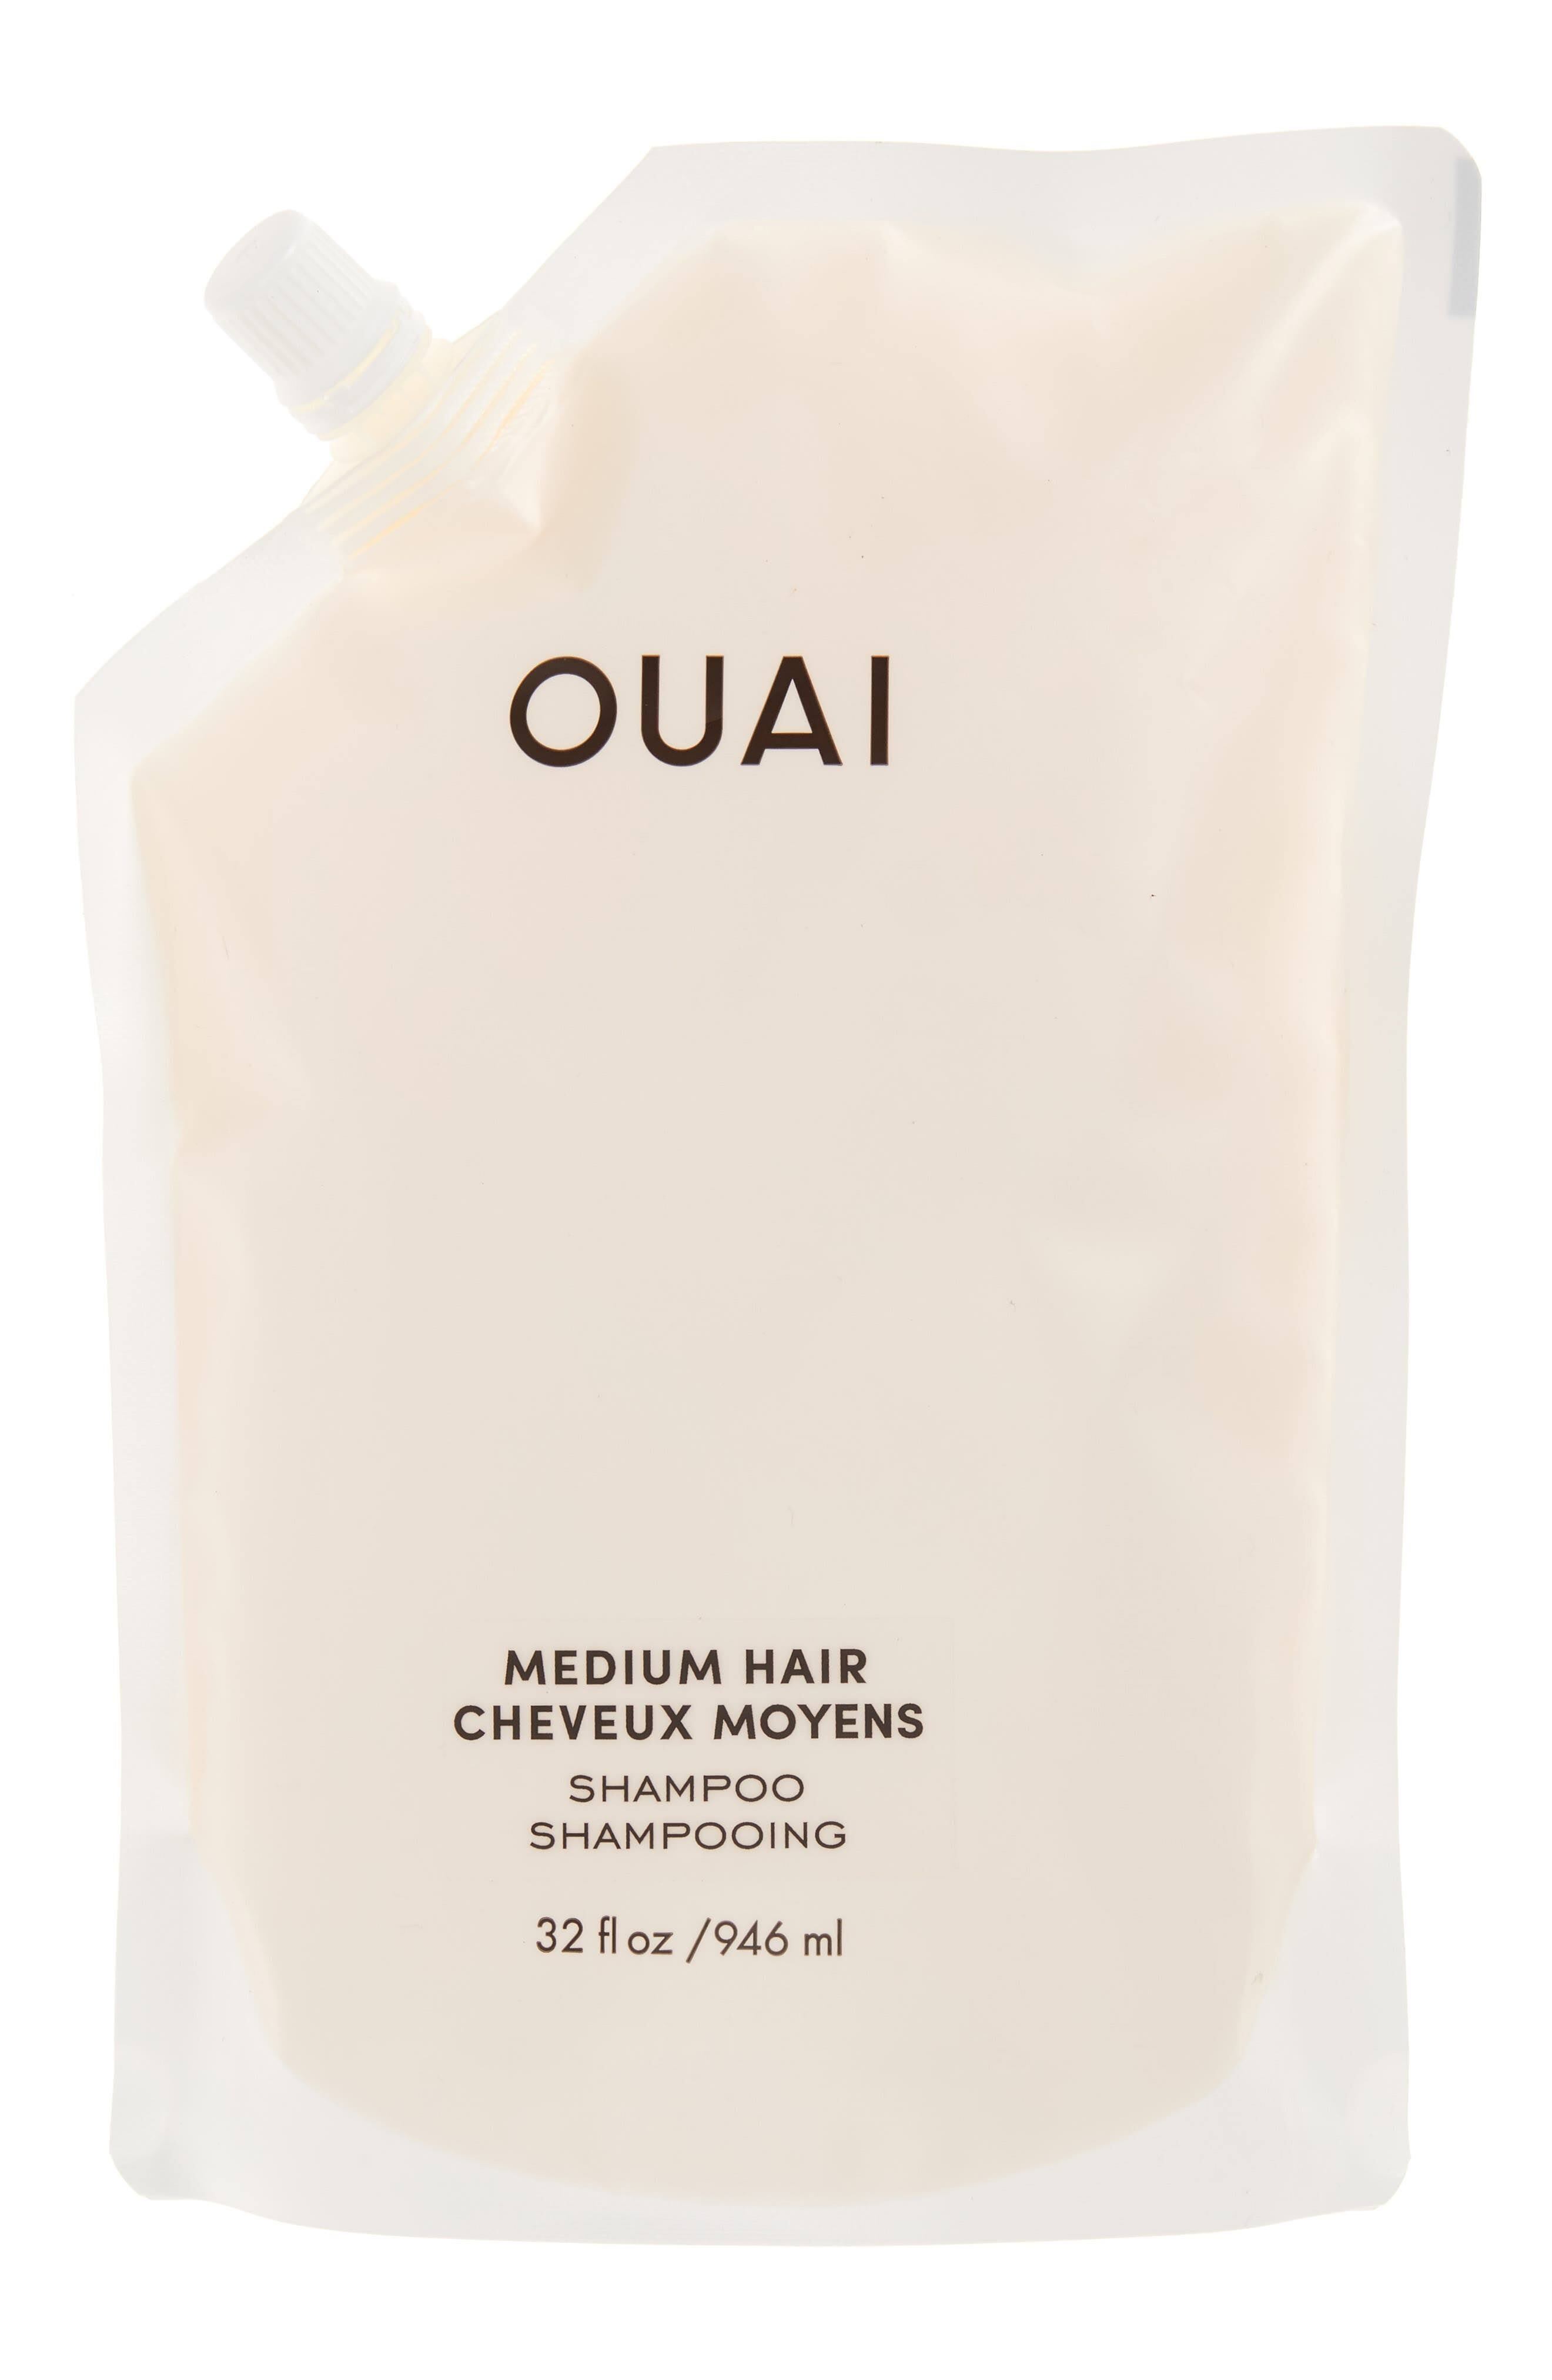 OUAI Medium Hair Shampoo - Refill 946 ml